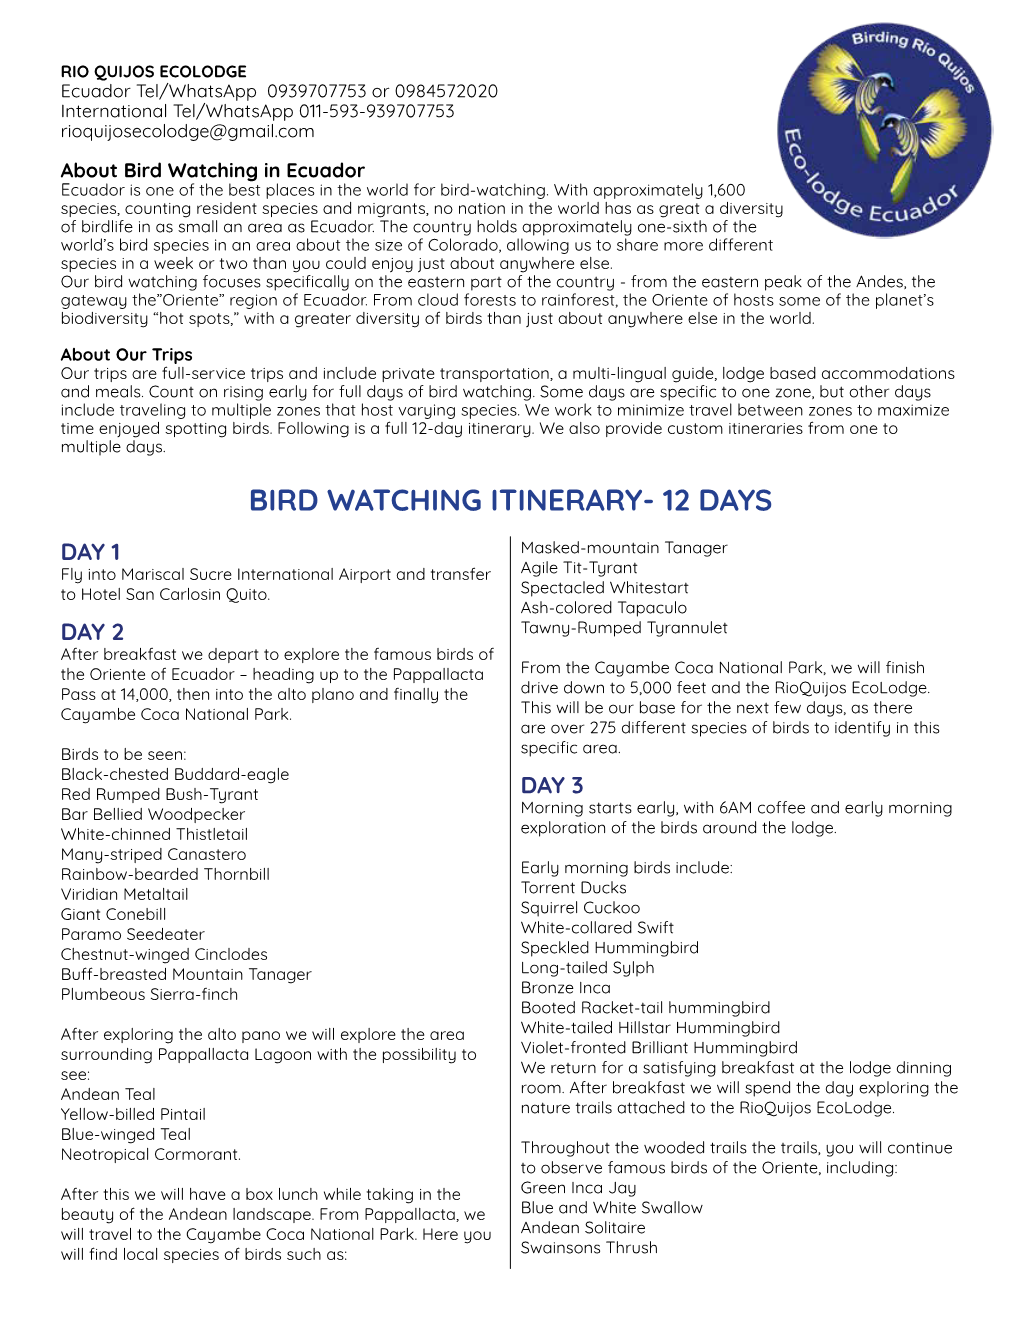 Bird Watching Itinerary- 12 Days